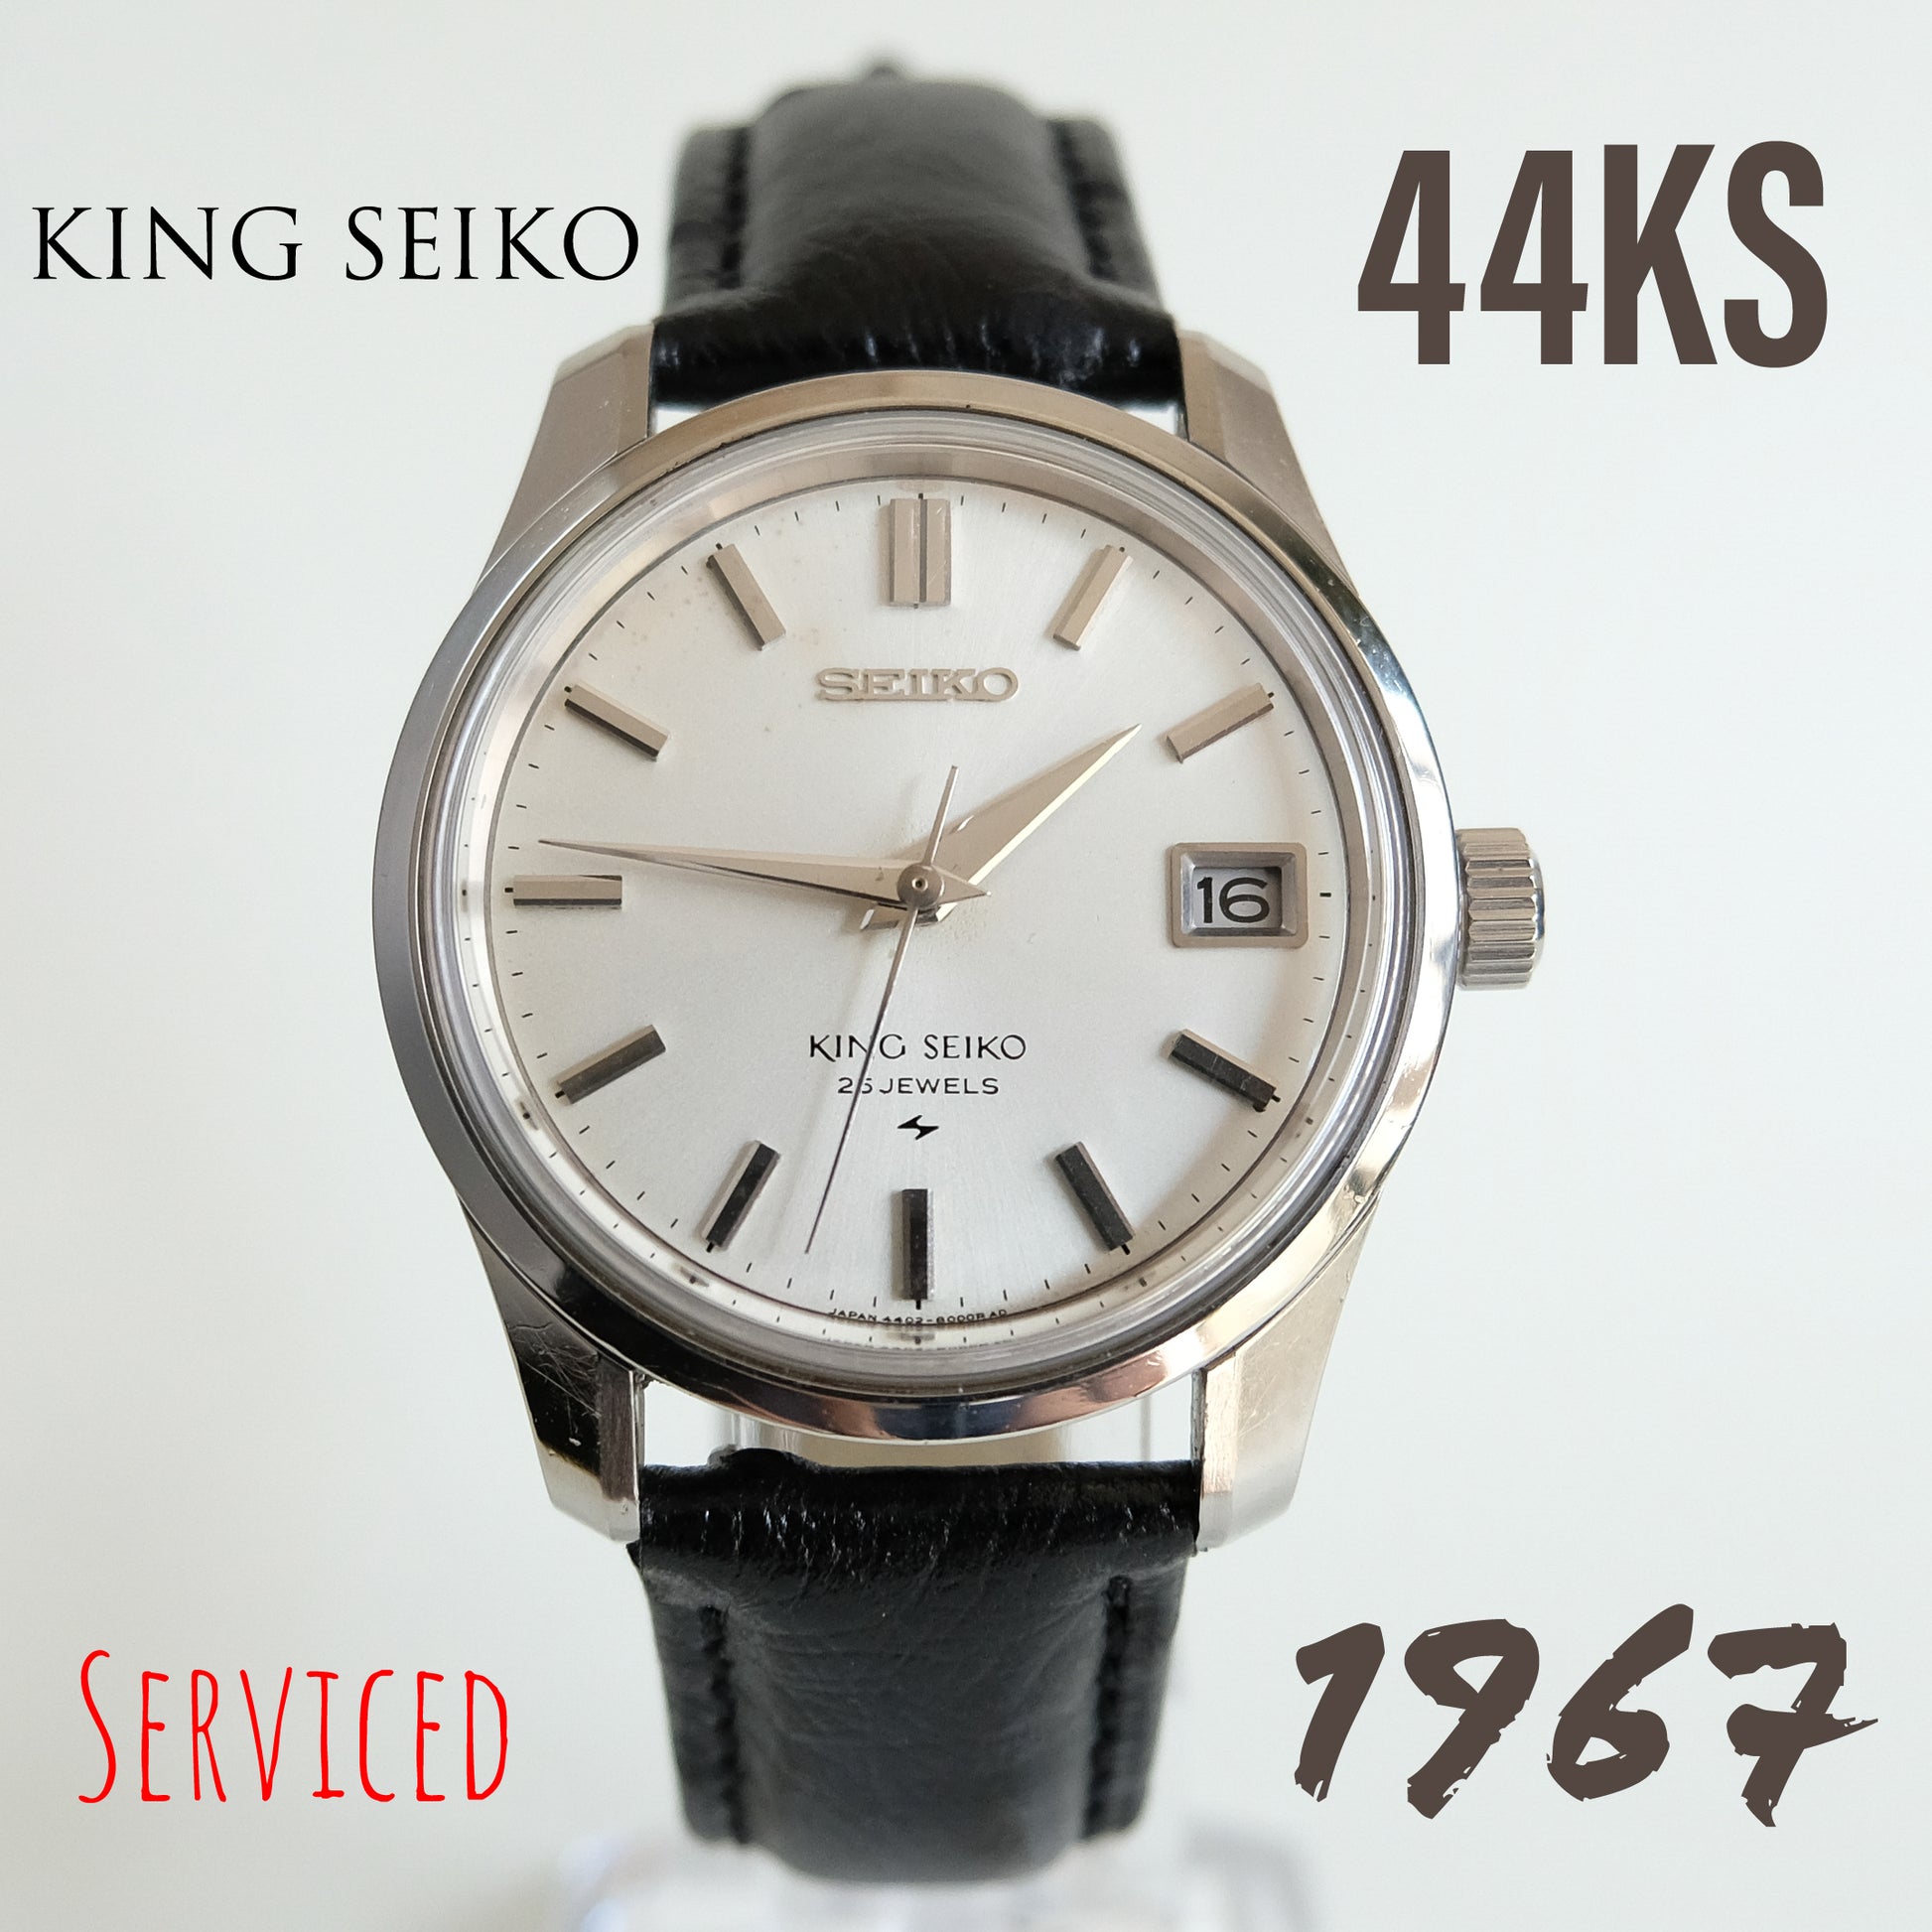 1967 King Seiko 44KS 4402-8000 – TokeiMedic